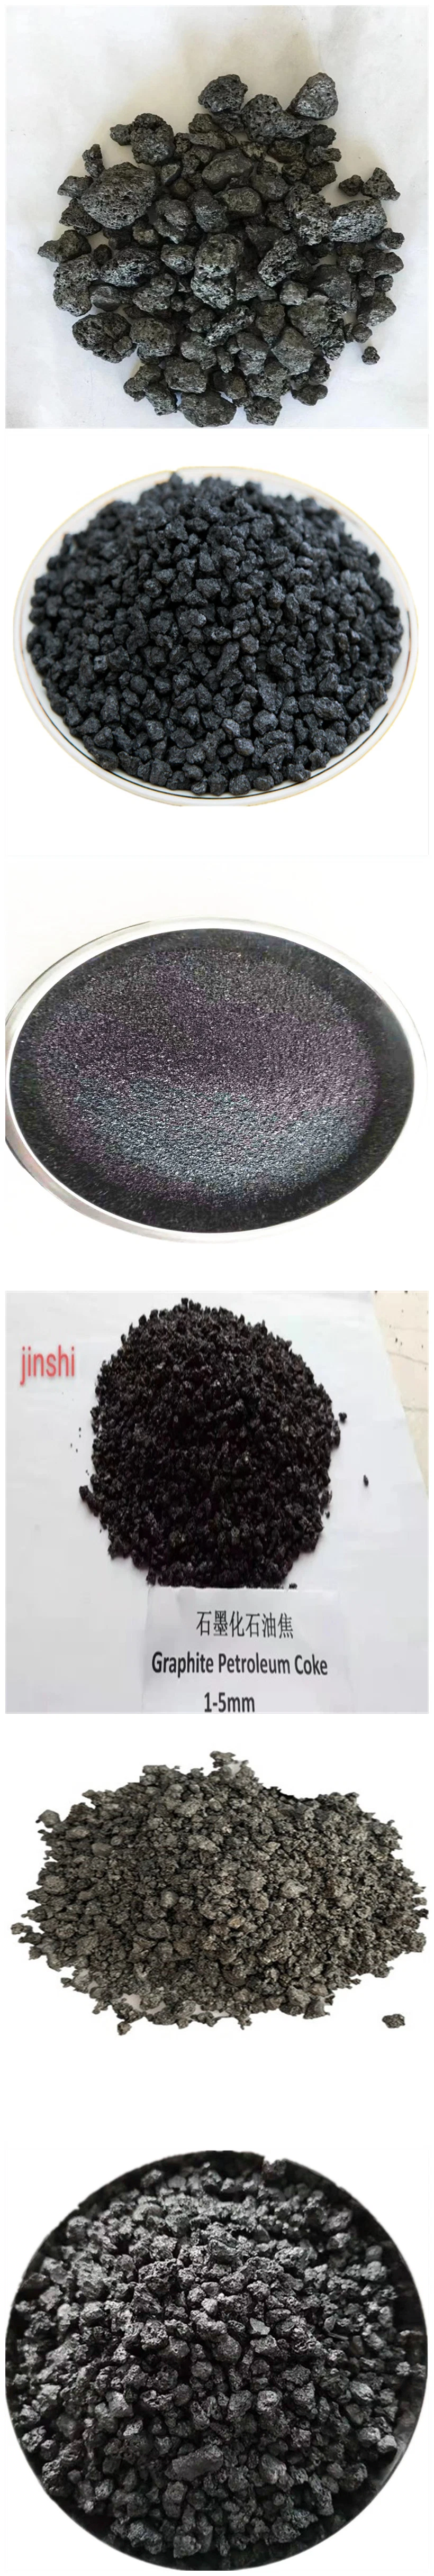 Iron Casting Carbon Raiser Low Sulfur Graphitized Pet Coke Graphite Petroleum Coke 1-4mm 98.5%